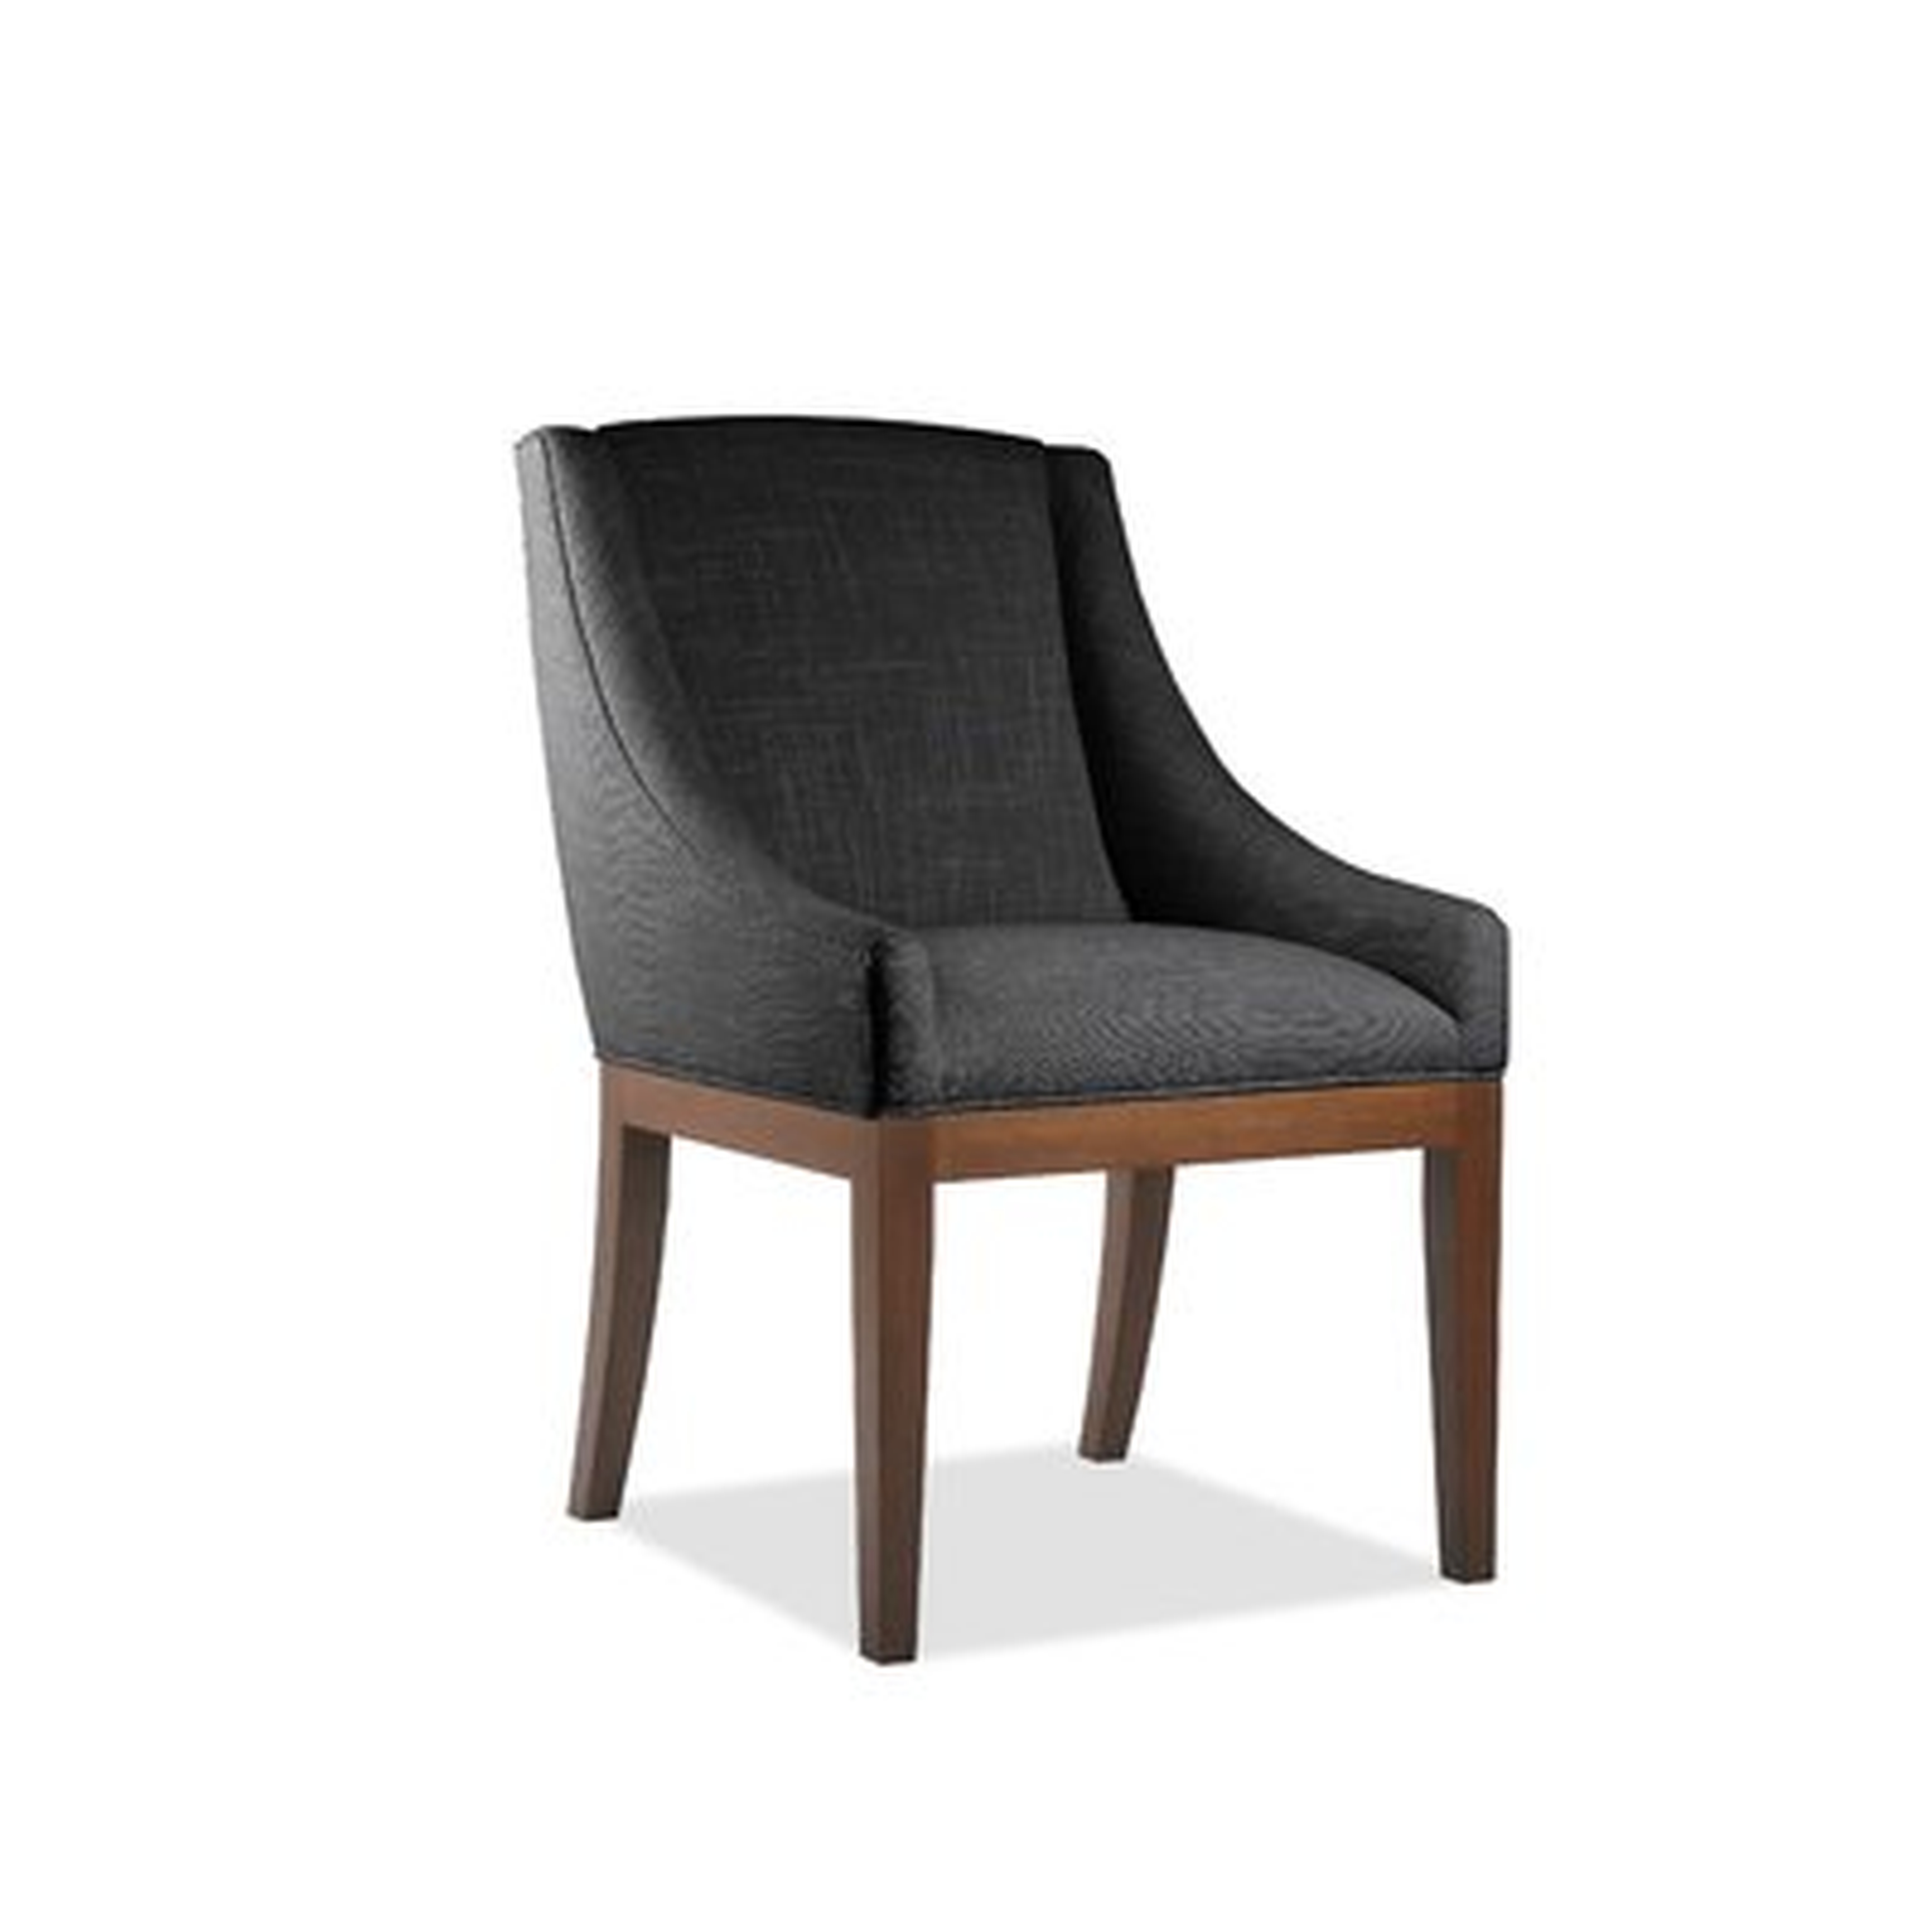 Moss Side Chair - Wayfair